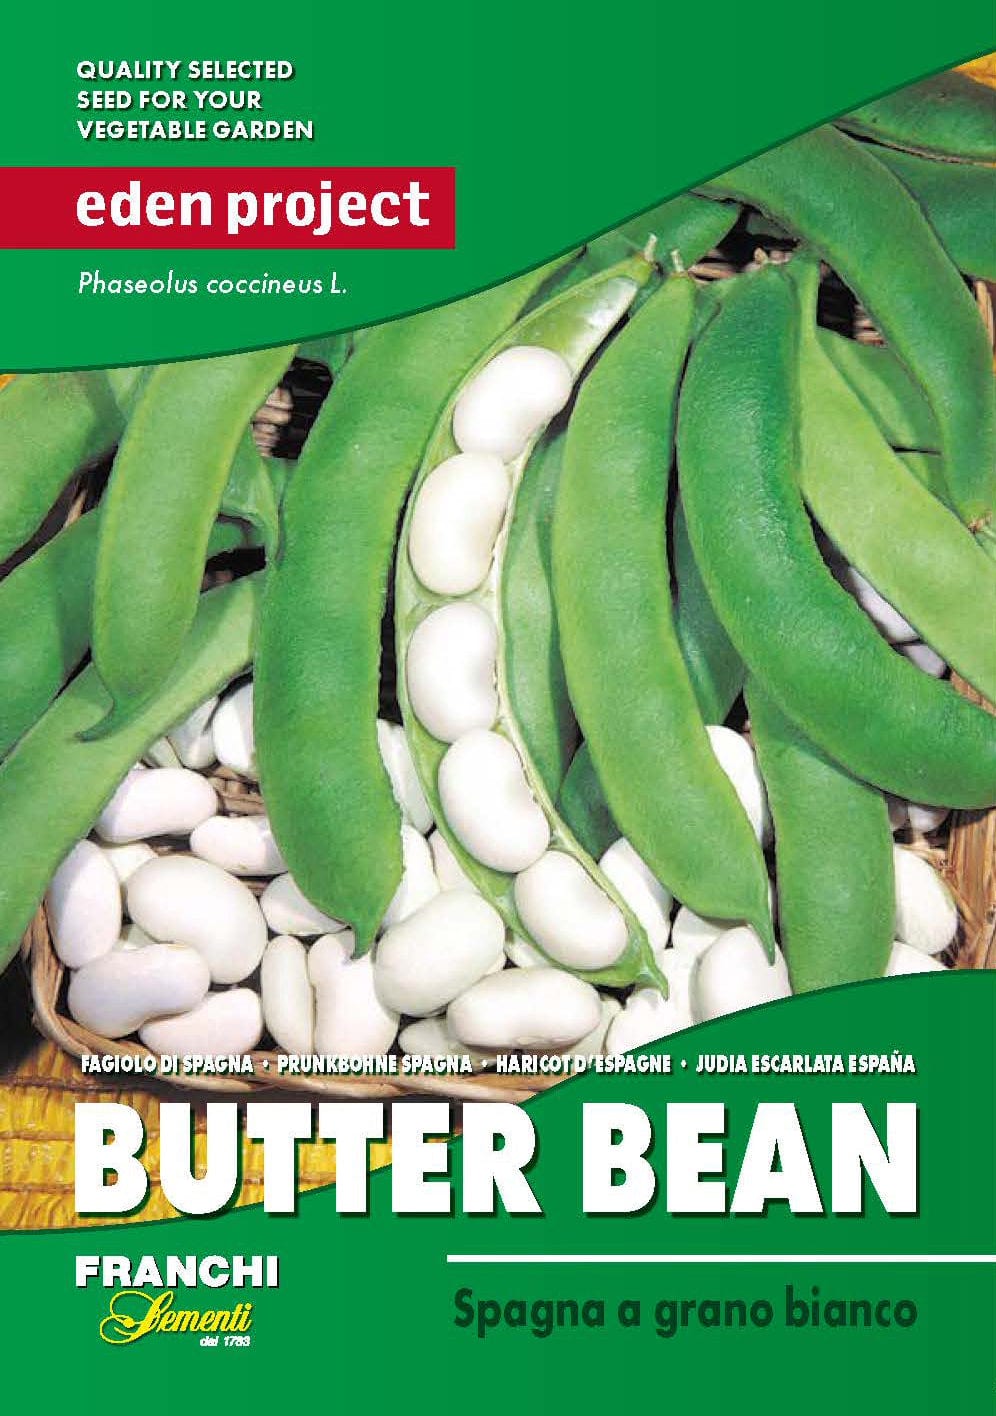 Eden butter bean seeds